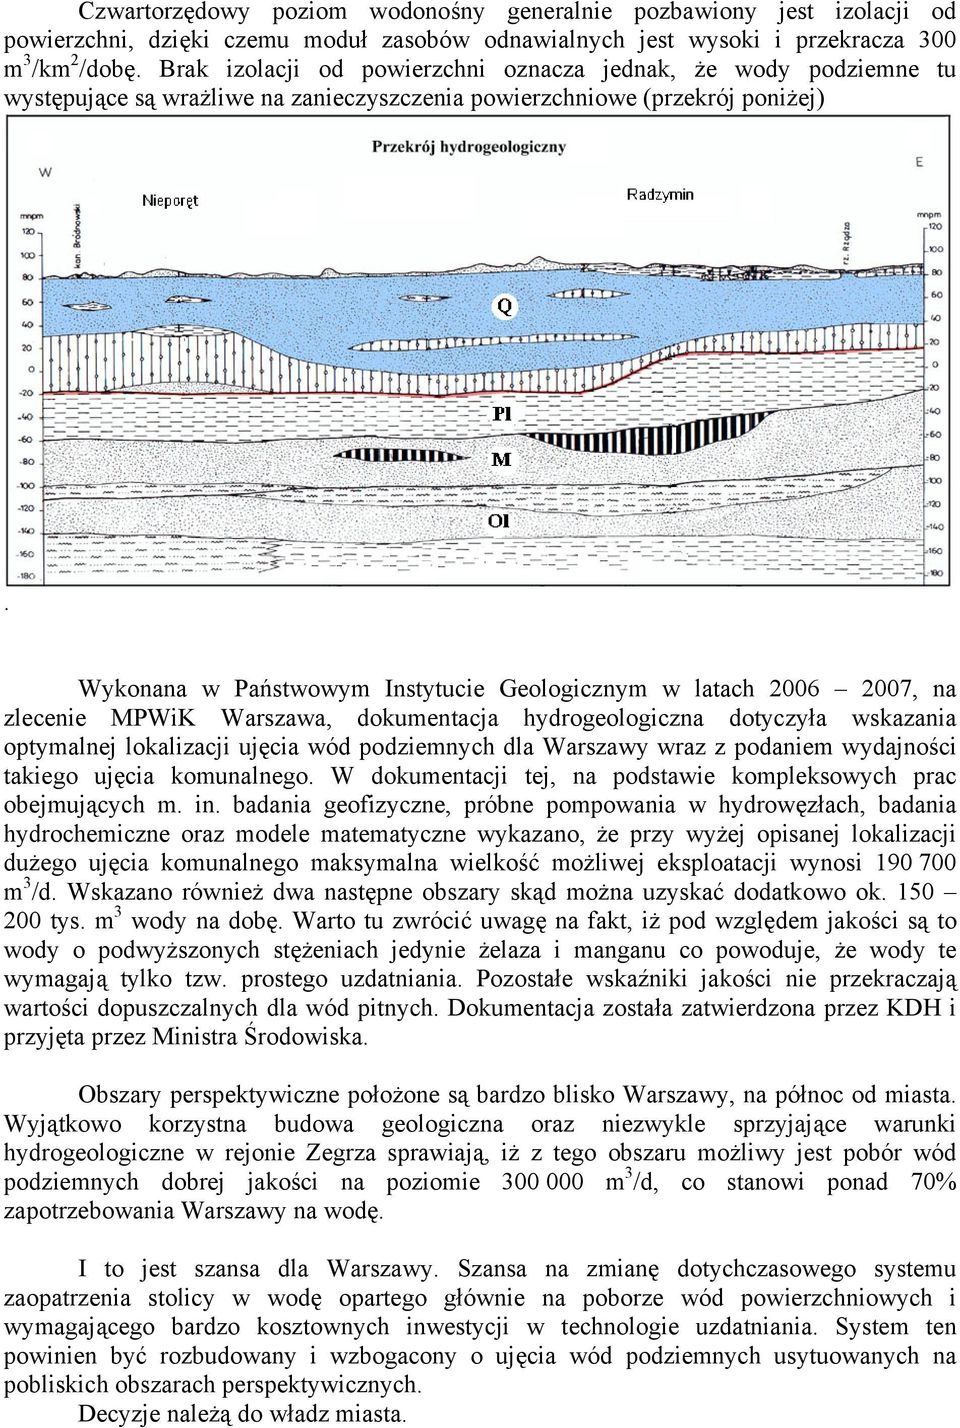 Wykonana w Państwowym Instytucie Geologicznym w latach 2006 2007, na zlecenie MPWiK Warszawa, dokumentacja hydrogeologiczna dotyczyła wskazania optymalnej lokalizacji ujęcia wód podziemnych dla